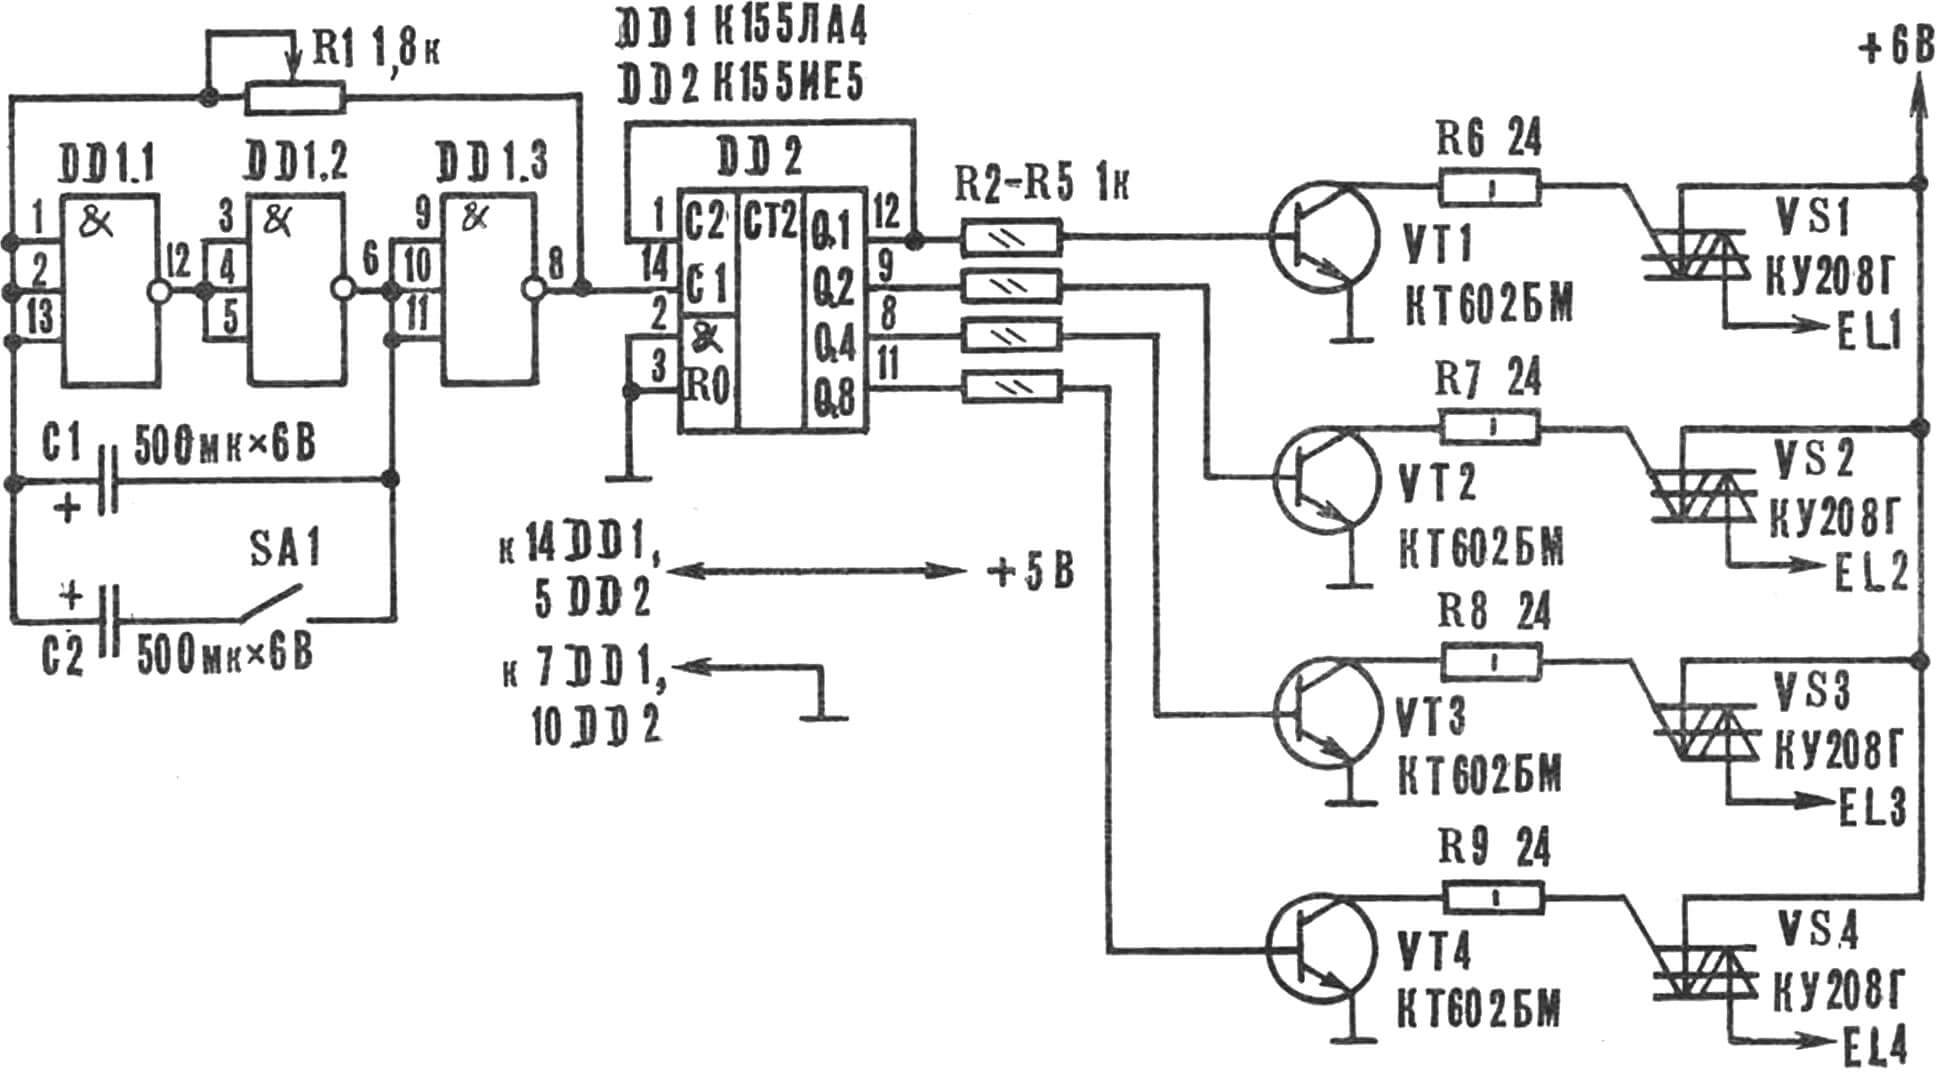 Рис. 1. Принципиальная схема автоматического переключателя прожекторов.